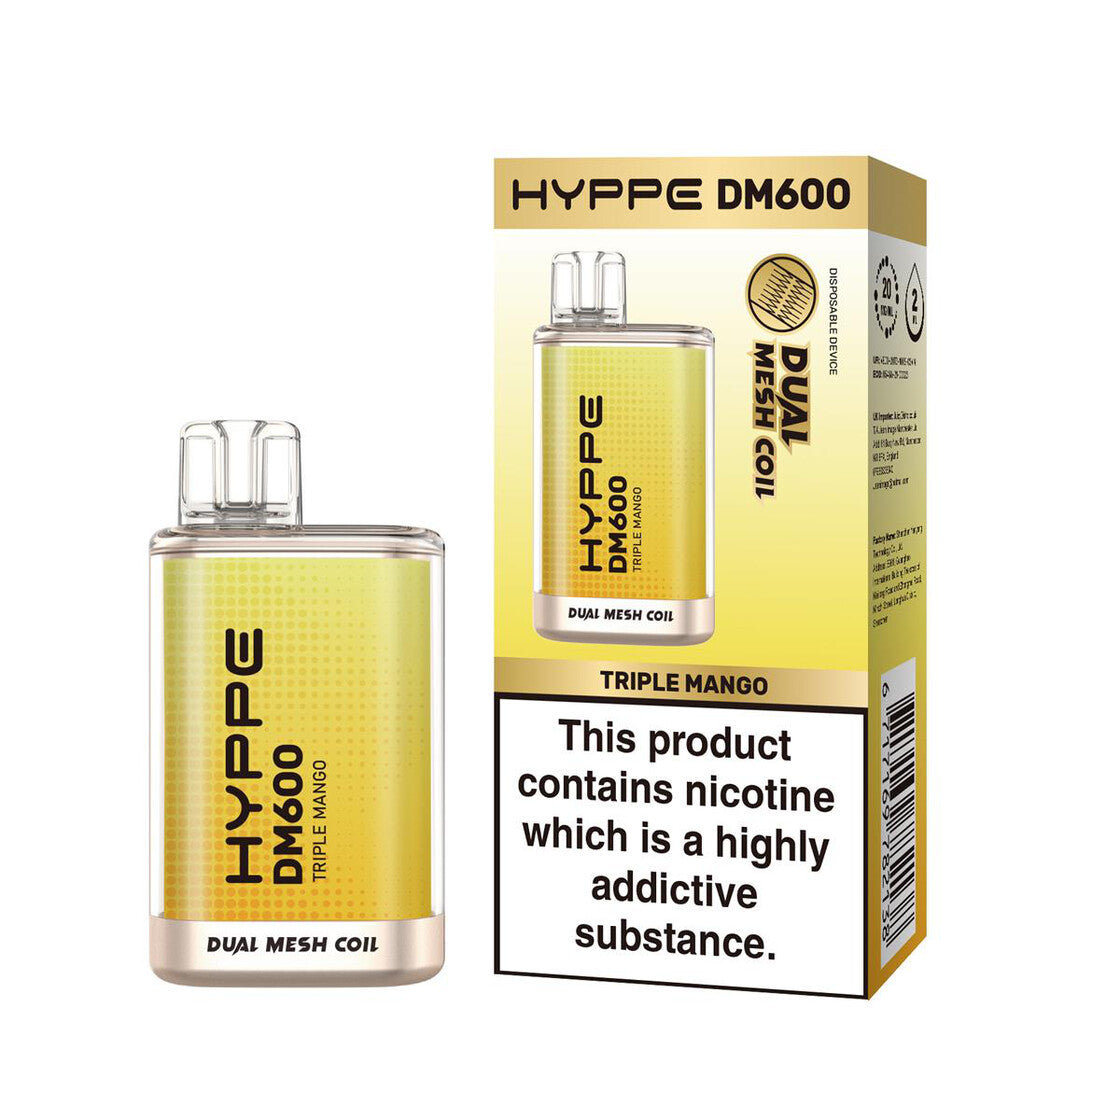 Flerbar Hyppe DM600 - Triple Mango